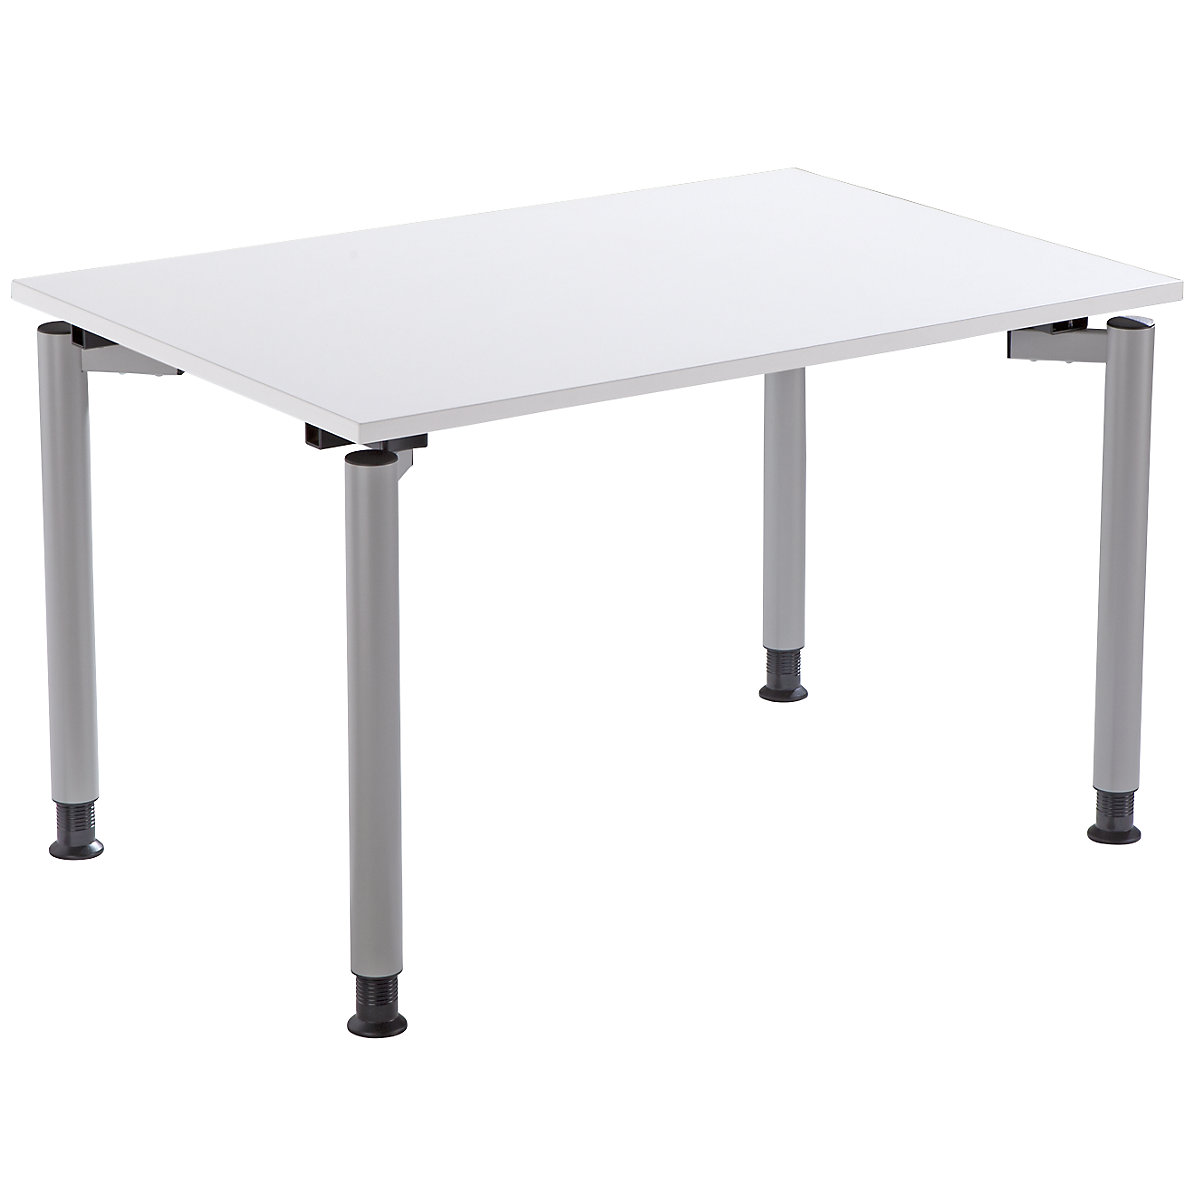 THEA Pisaći stol s postoljem s 4 noge, visina 680 – 820 mm, širina 1200 mm, u starinski bijeloj boji